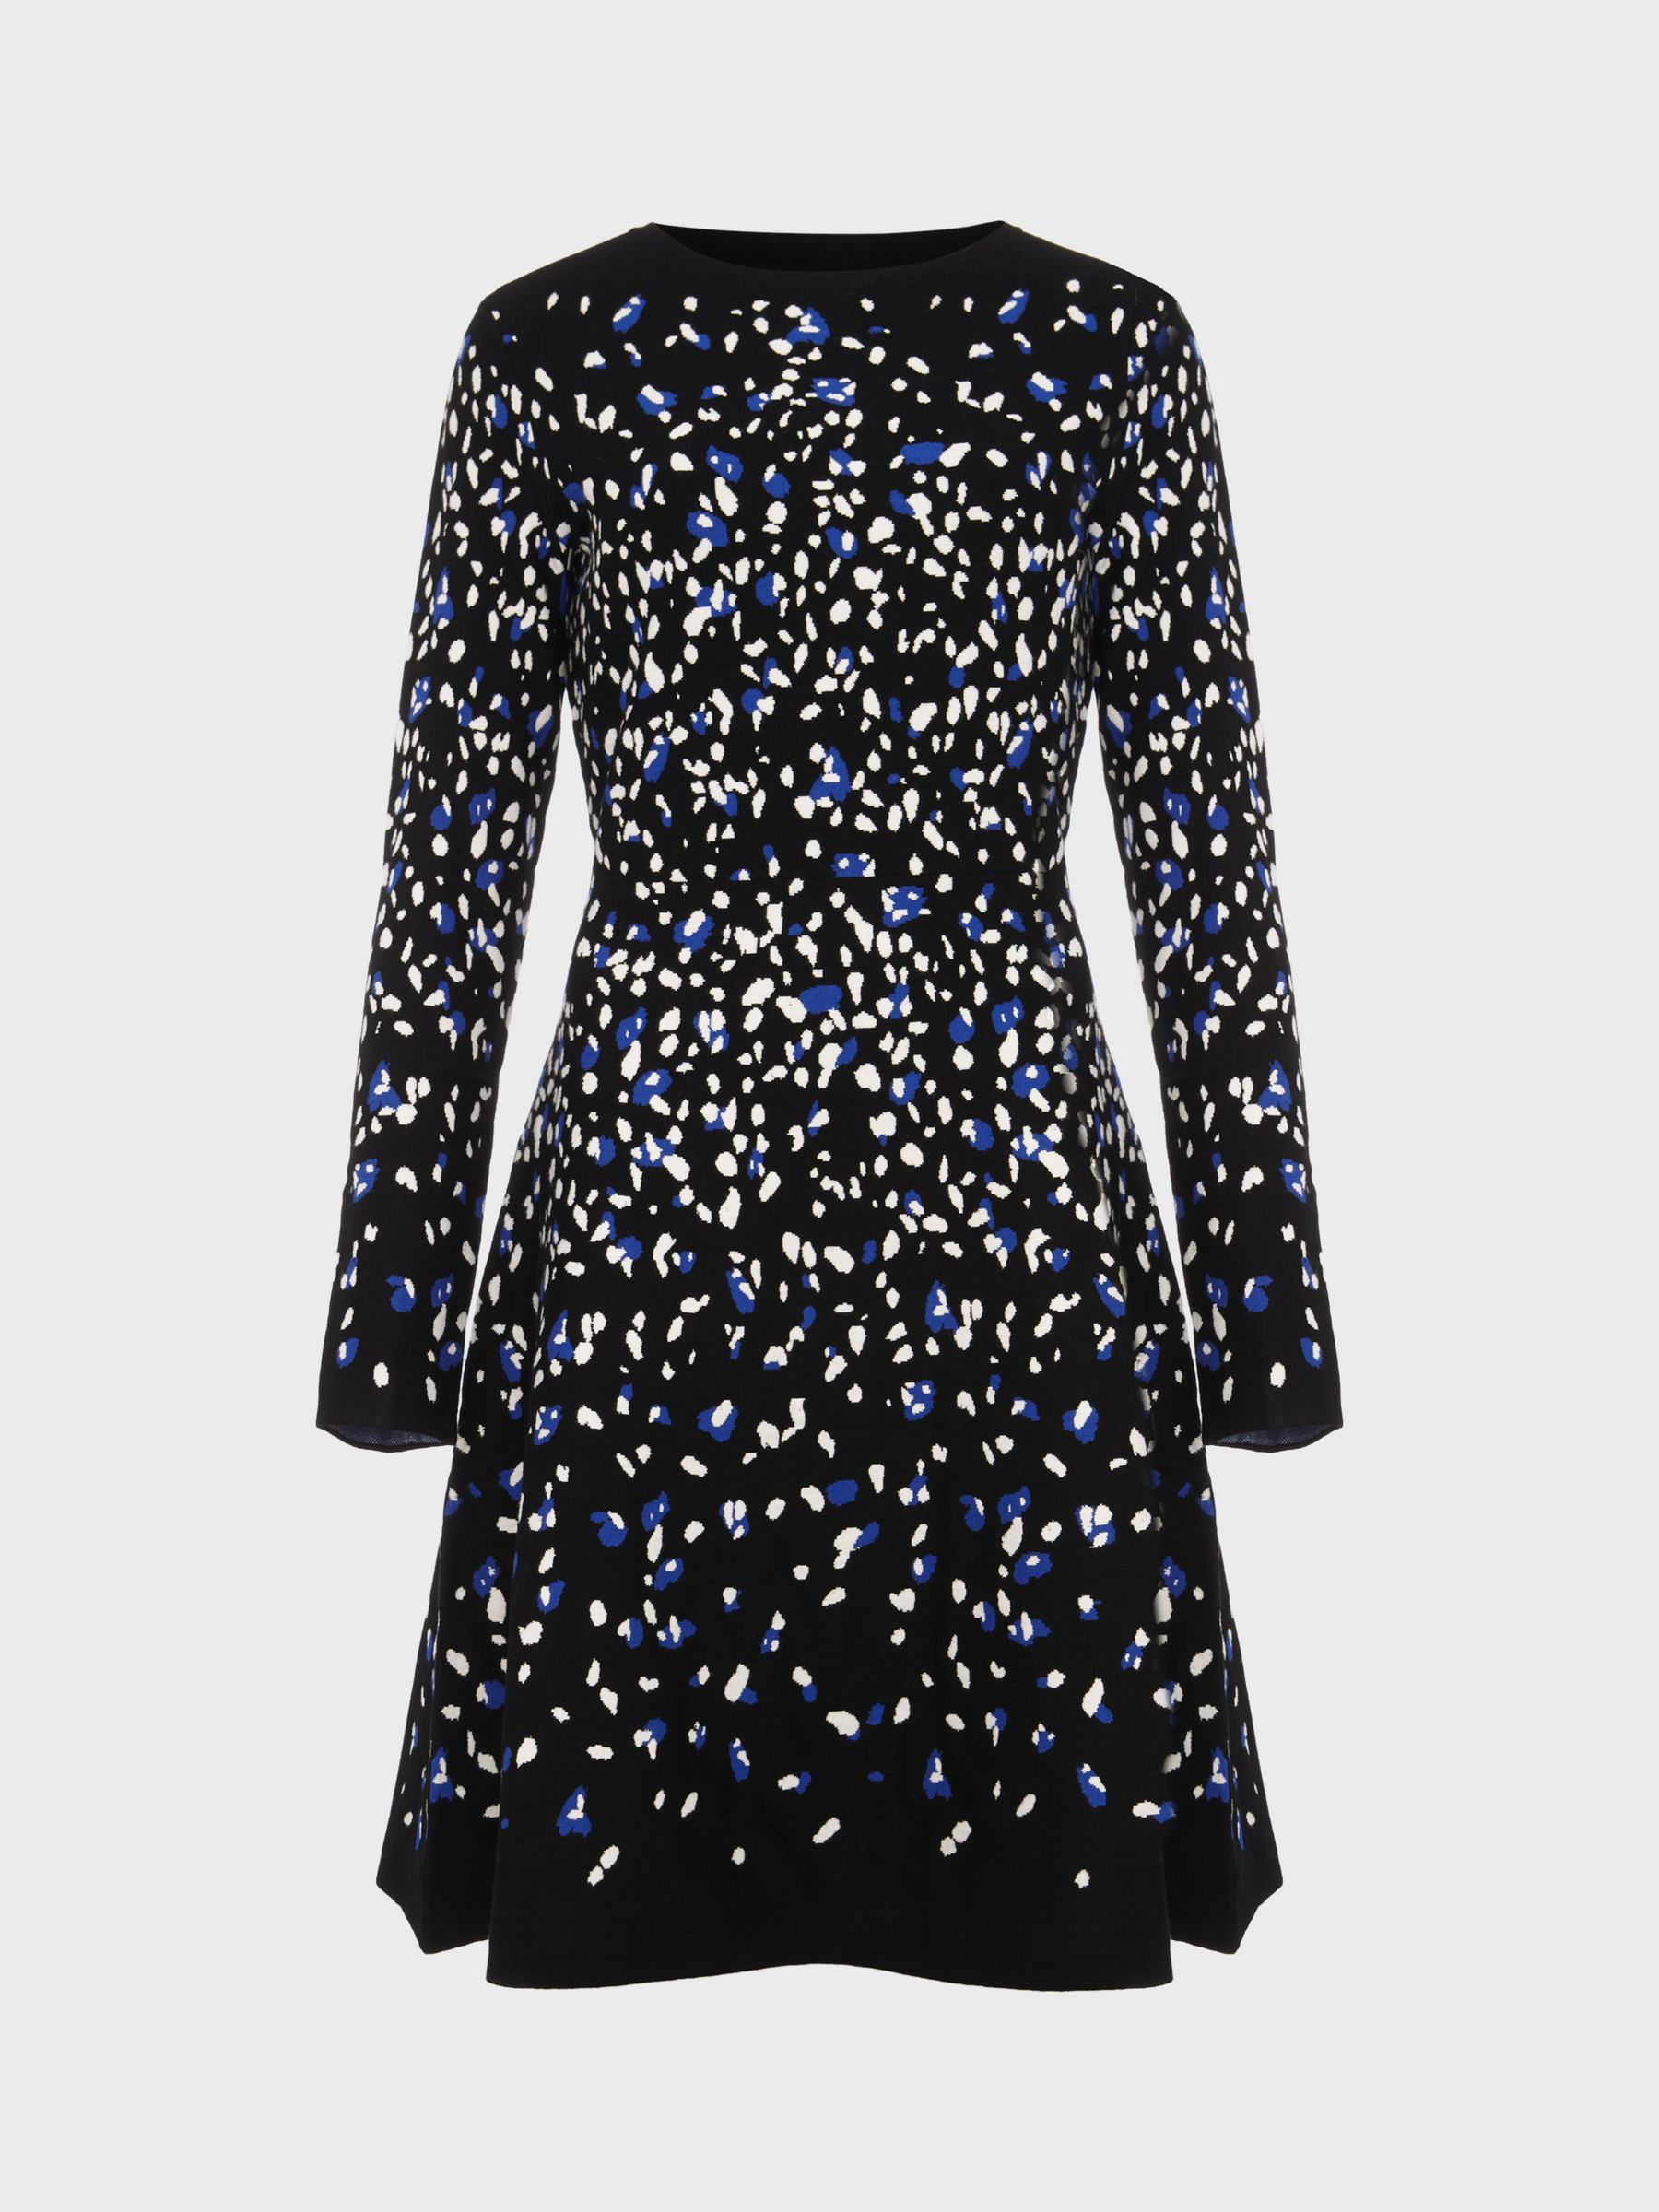 Buy Hobbs Jodie Knitted Dress, Black/Multi Online at johnlewis.com